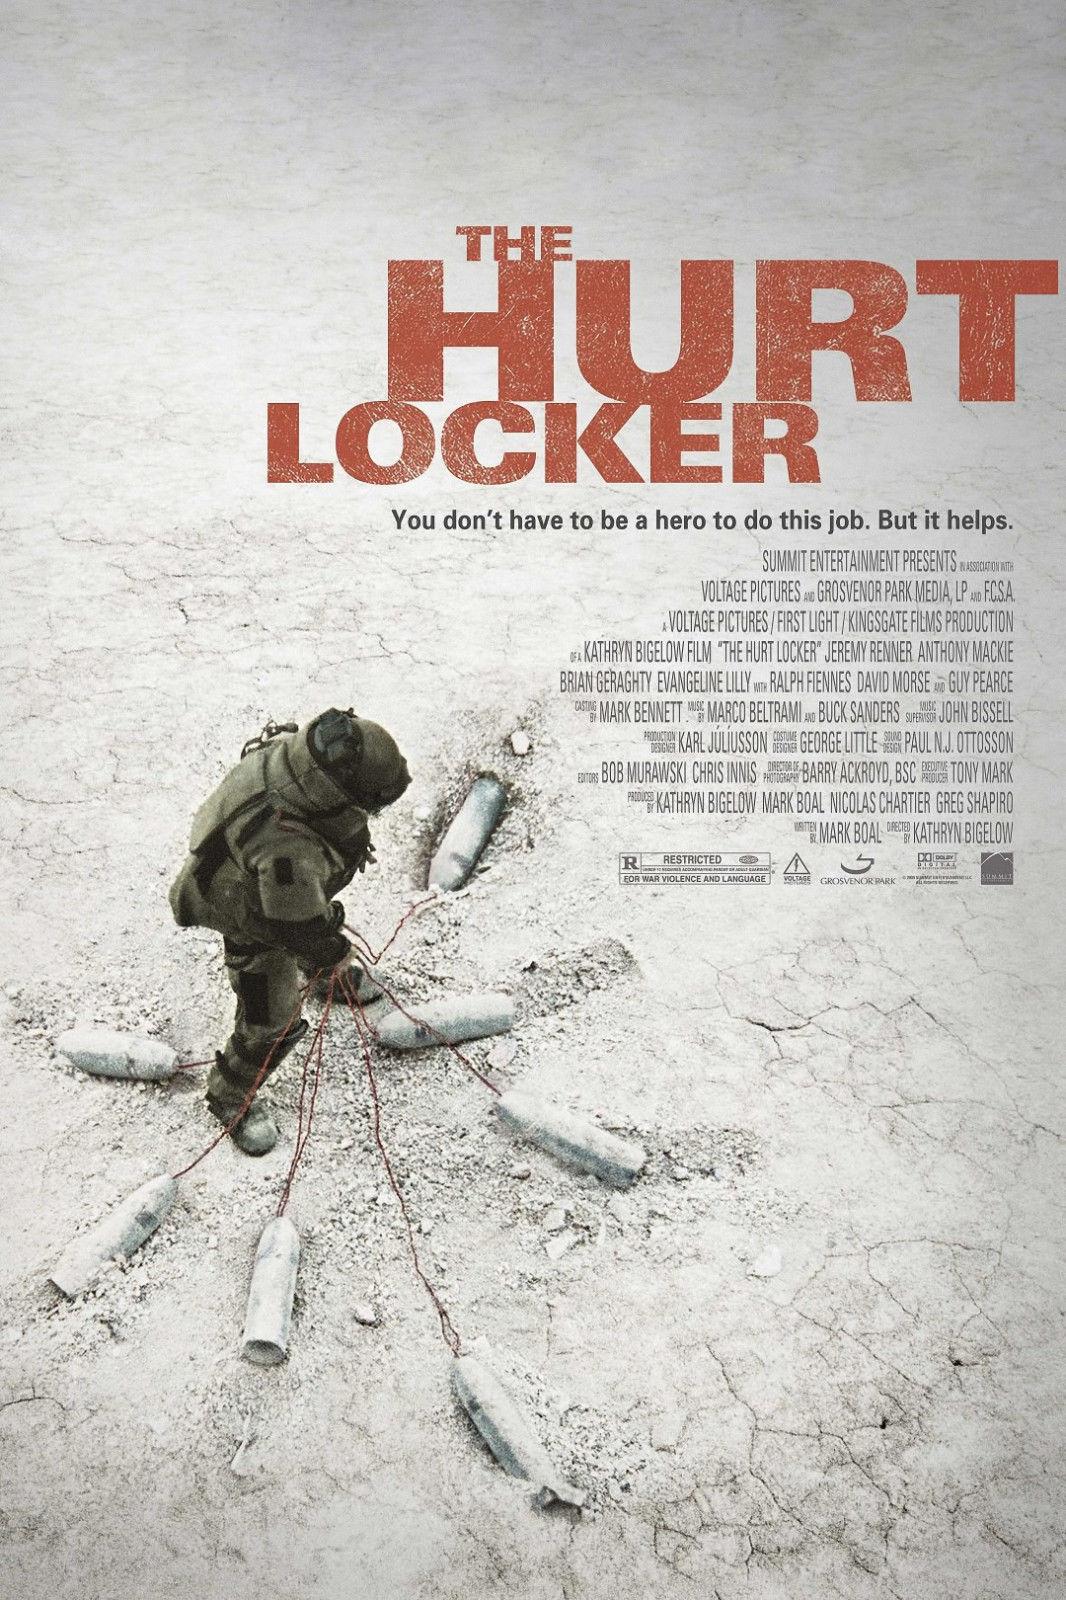 FULL MOVIE: The Hurt Locker (2008)